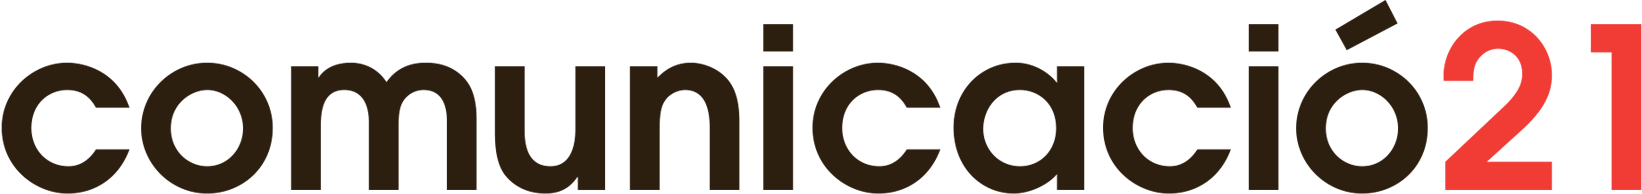 logo_GrupComunicacio21_ok